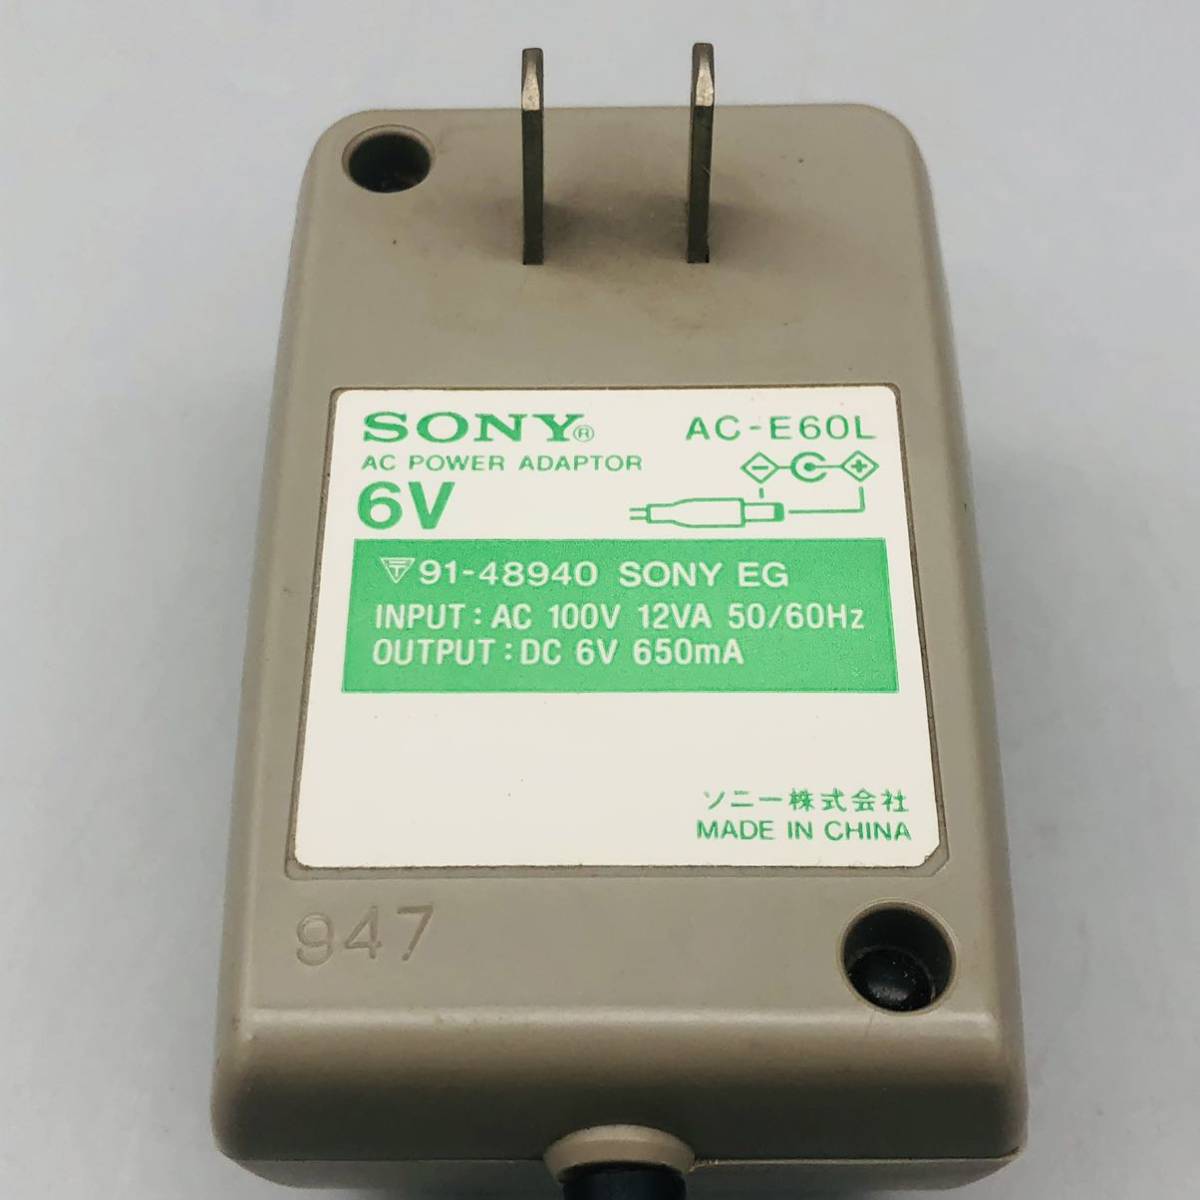 SONY Sony original AC adaptor AC-E60L power supply cable charger disk man correspondence 6v 650mA AC 100V 12VA 50/60Hz POWER ADAPTOR original one shape 